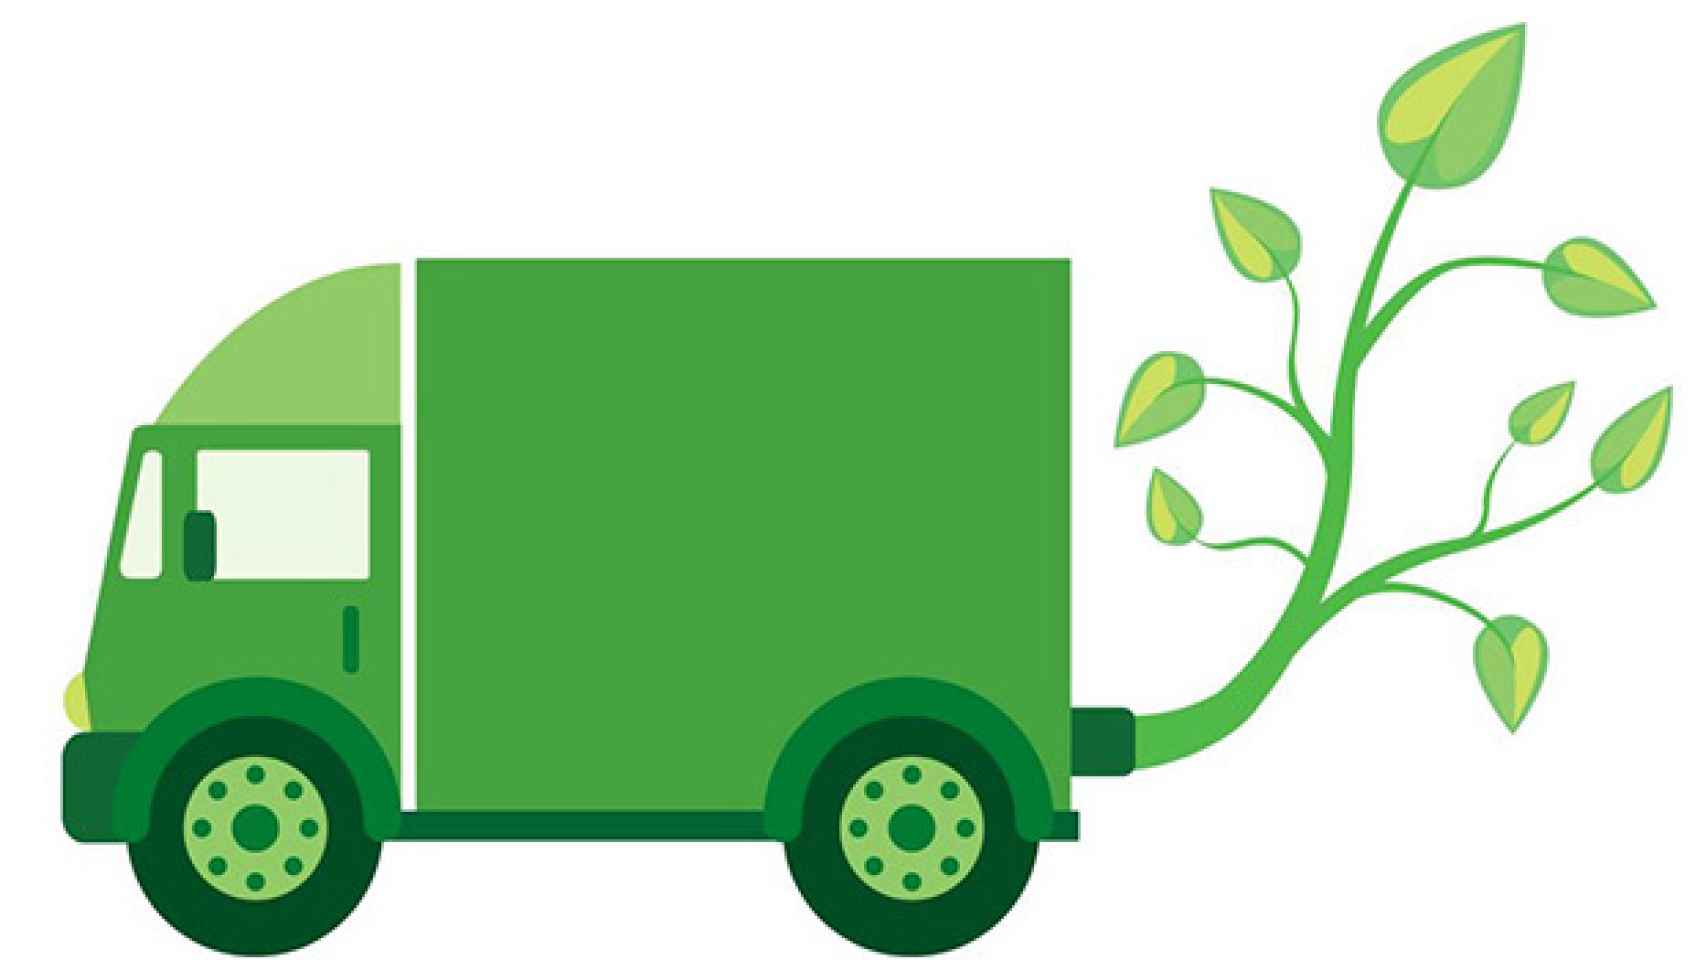 Transporte de mercancías más sostenible.